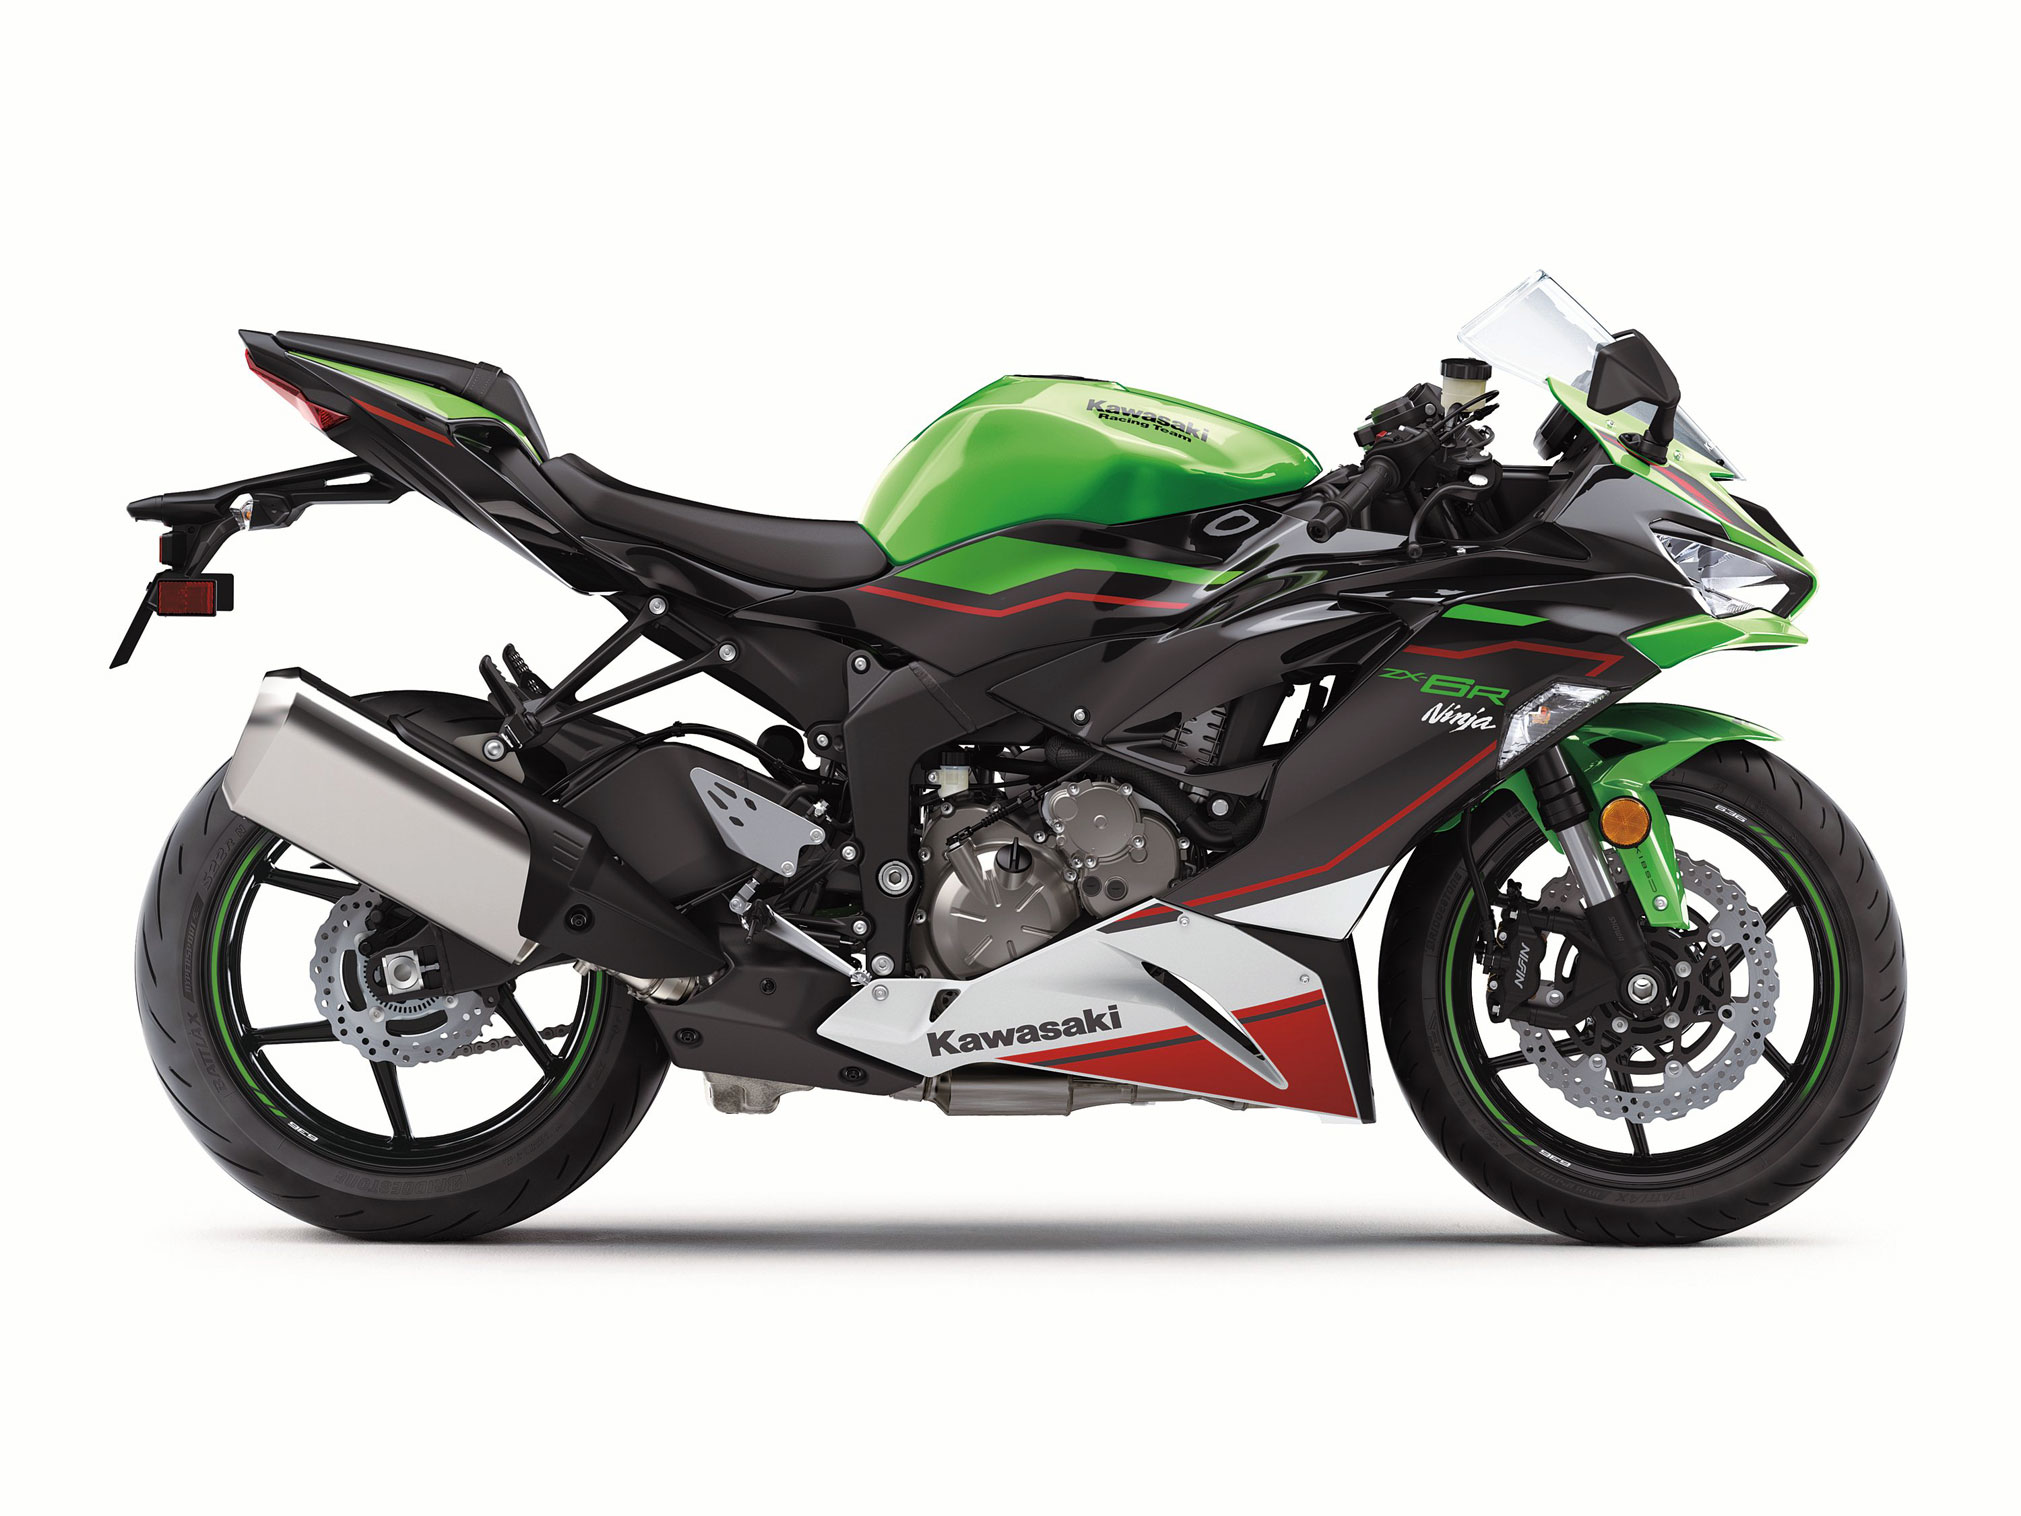 uddannelse næse navigation 2021 Kawasaki Ninja ZX-6R KRT Guide • Total Motorcycle